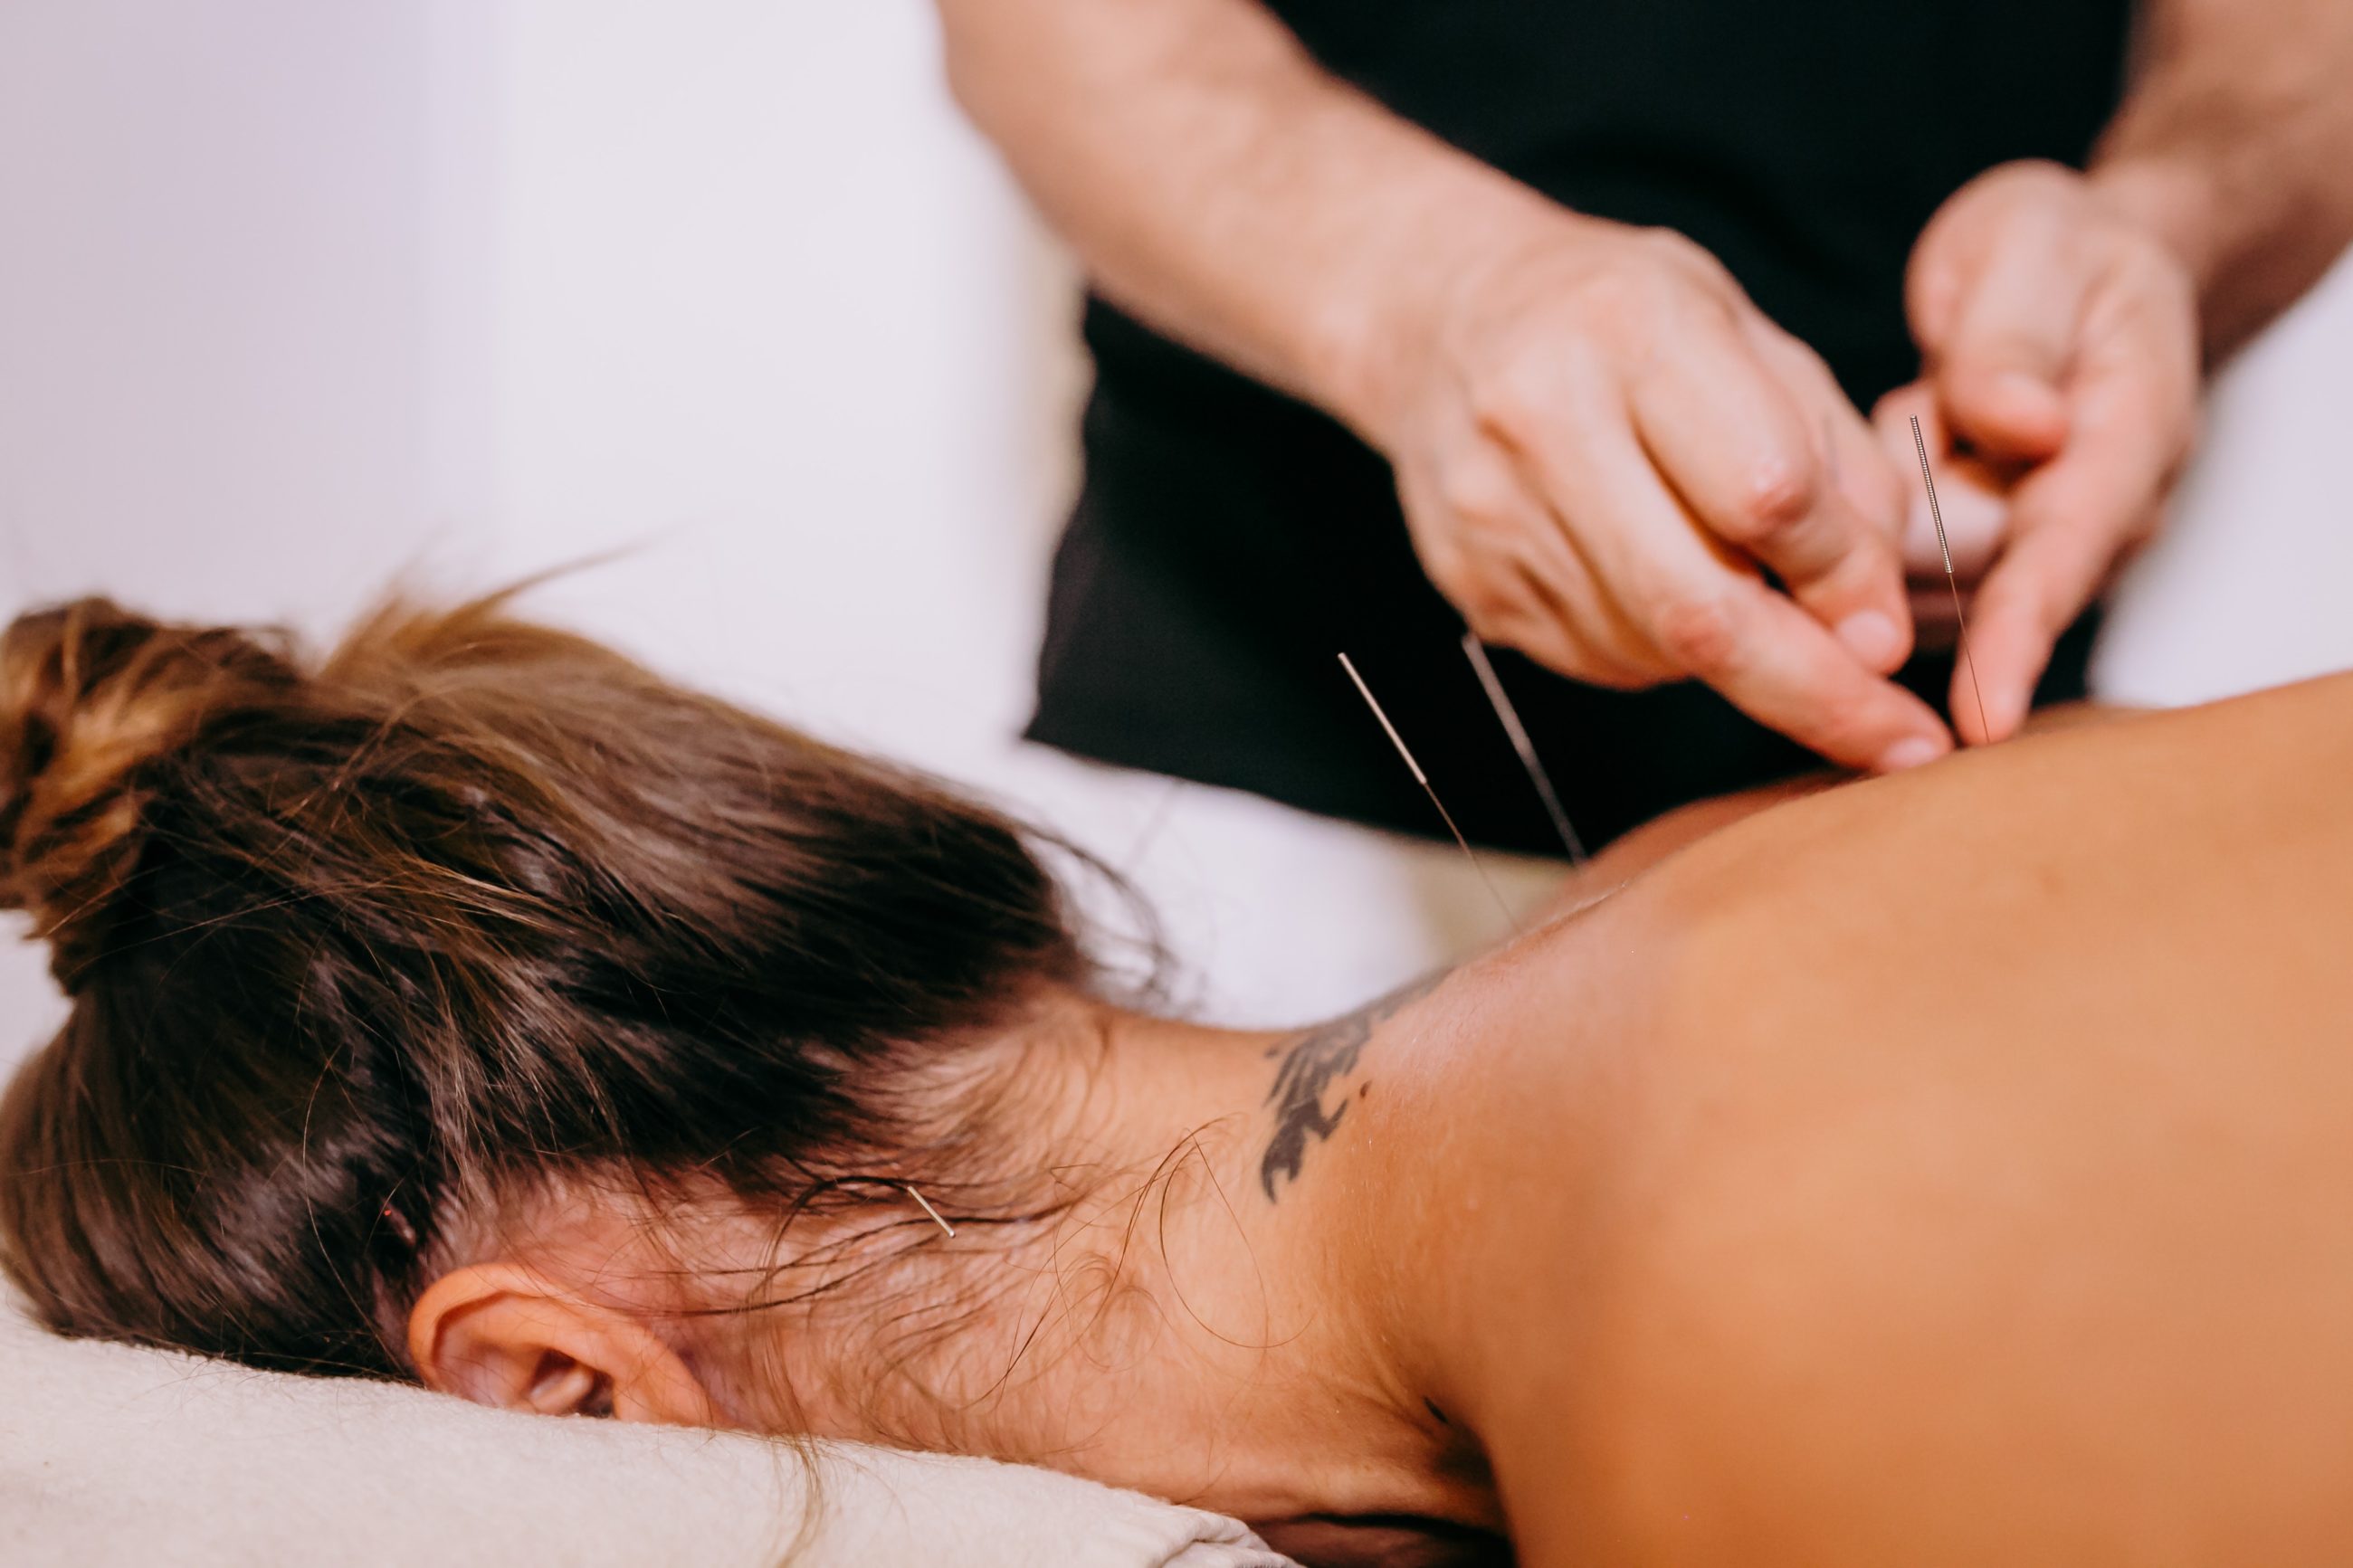 Médecine chinoise : les bienfaits de l’acupuncture pour booster la fertilité féminine et masculine.